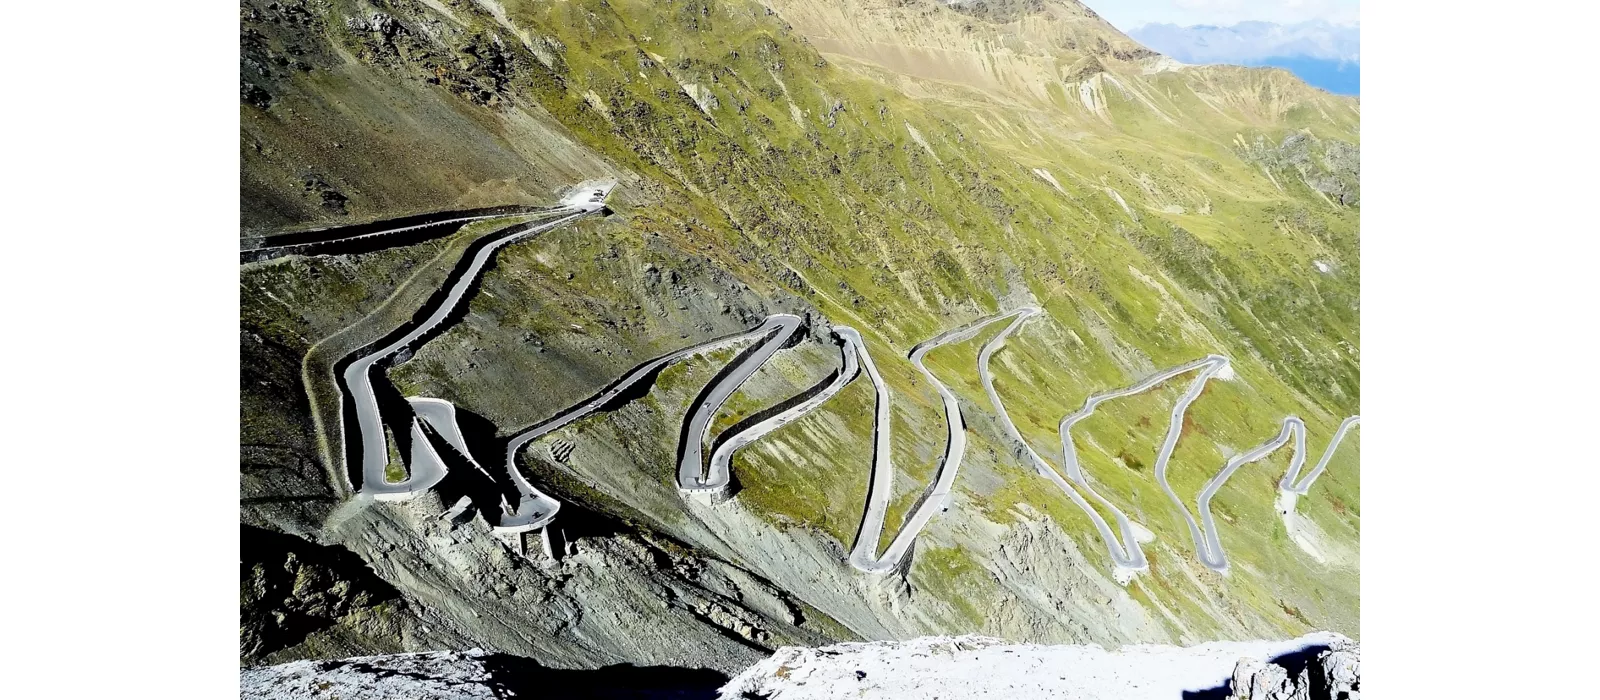 Scalare le Alpi Retiche in bicicletta, da Prato allo Stelvio al Passo dello Stelvio